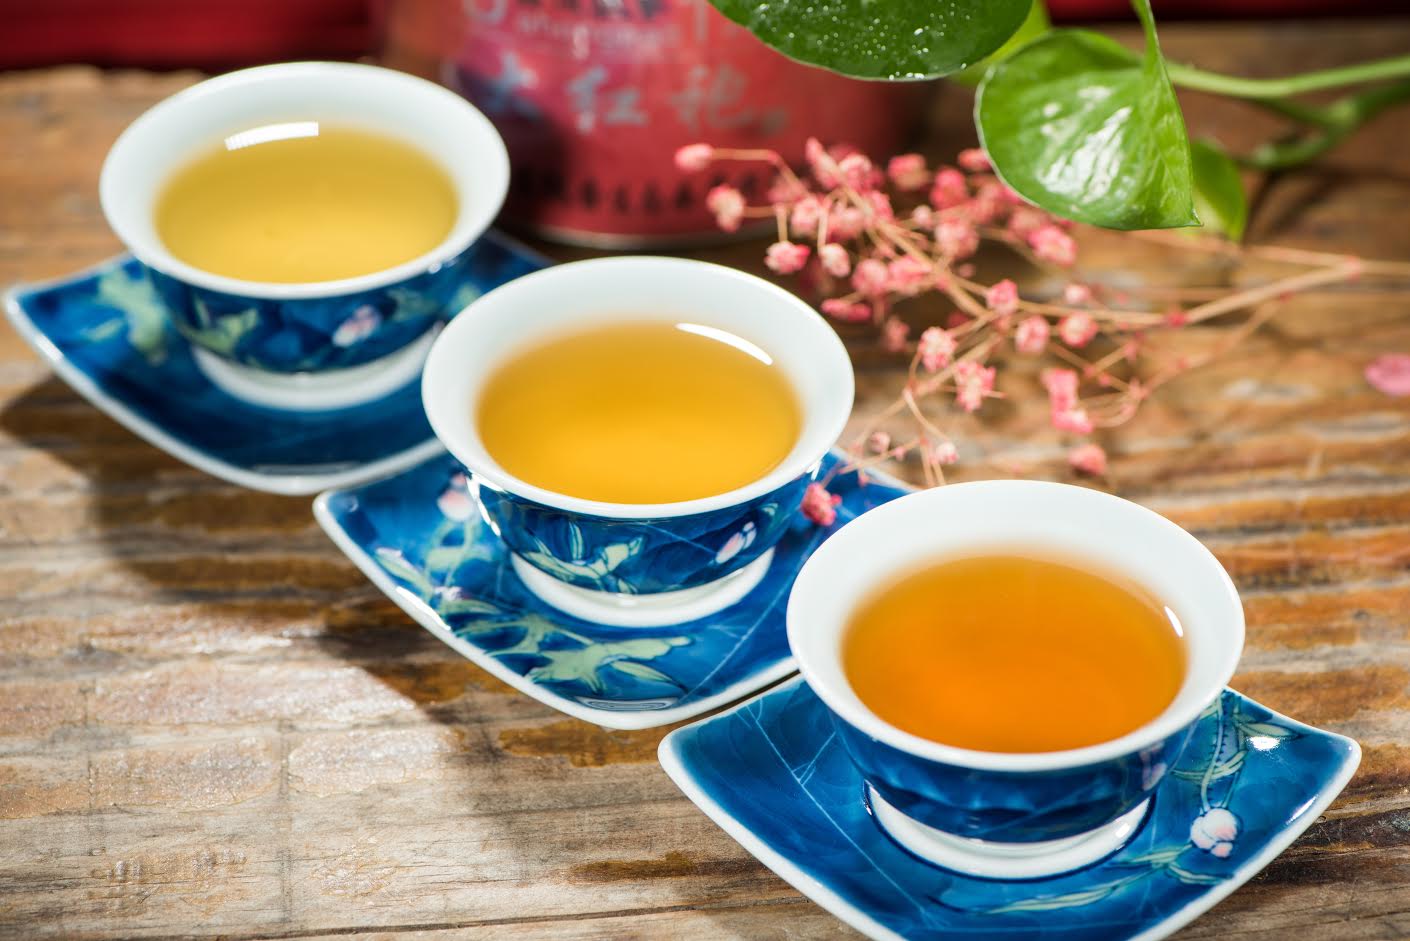 Imagini pentru black tea green tea and coffee